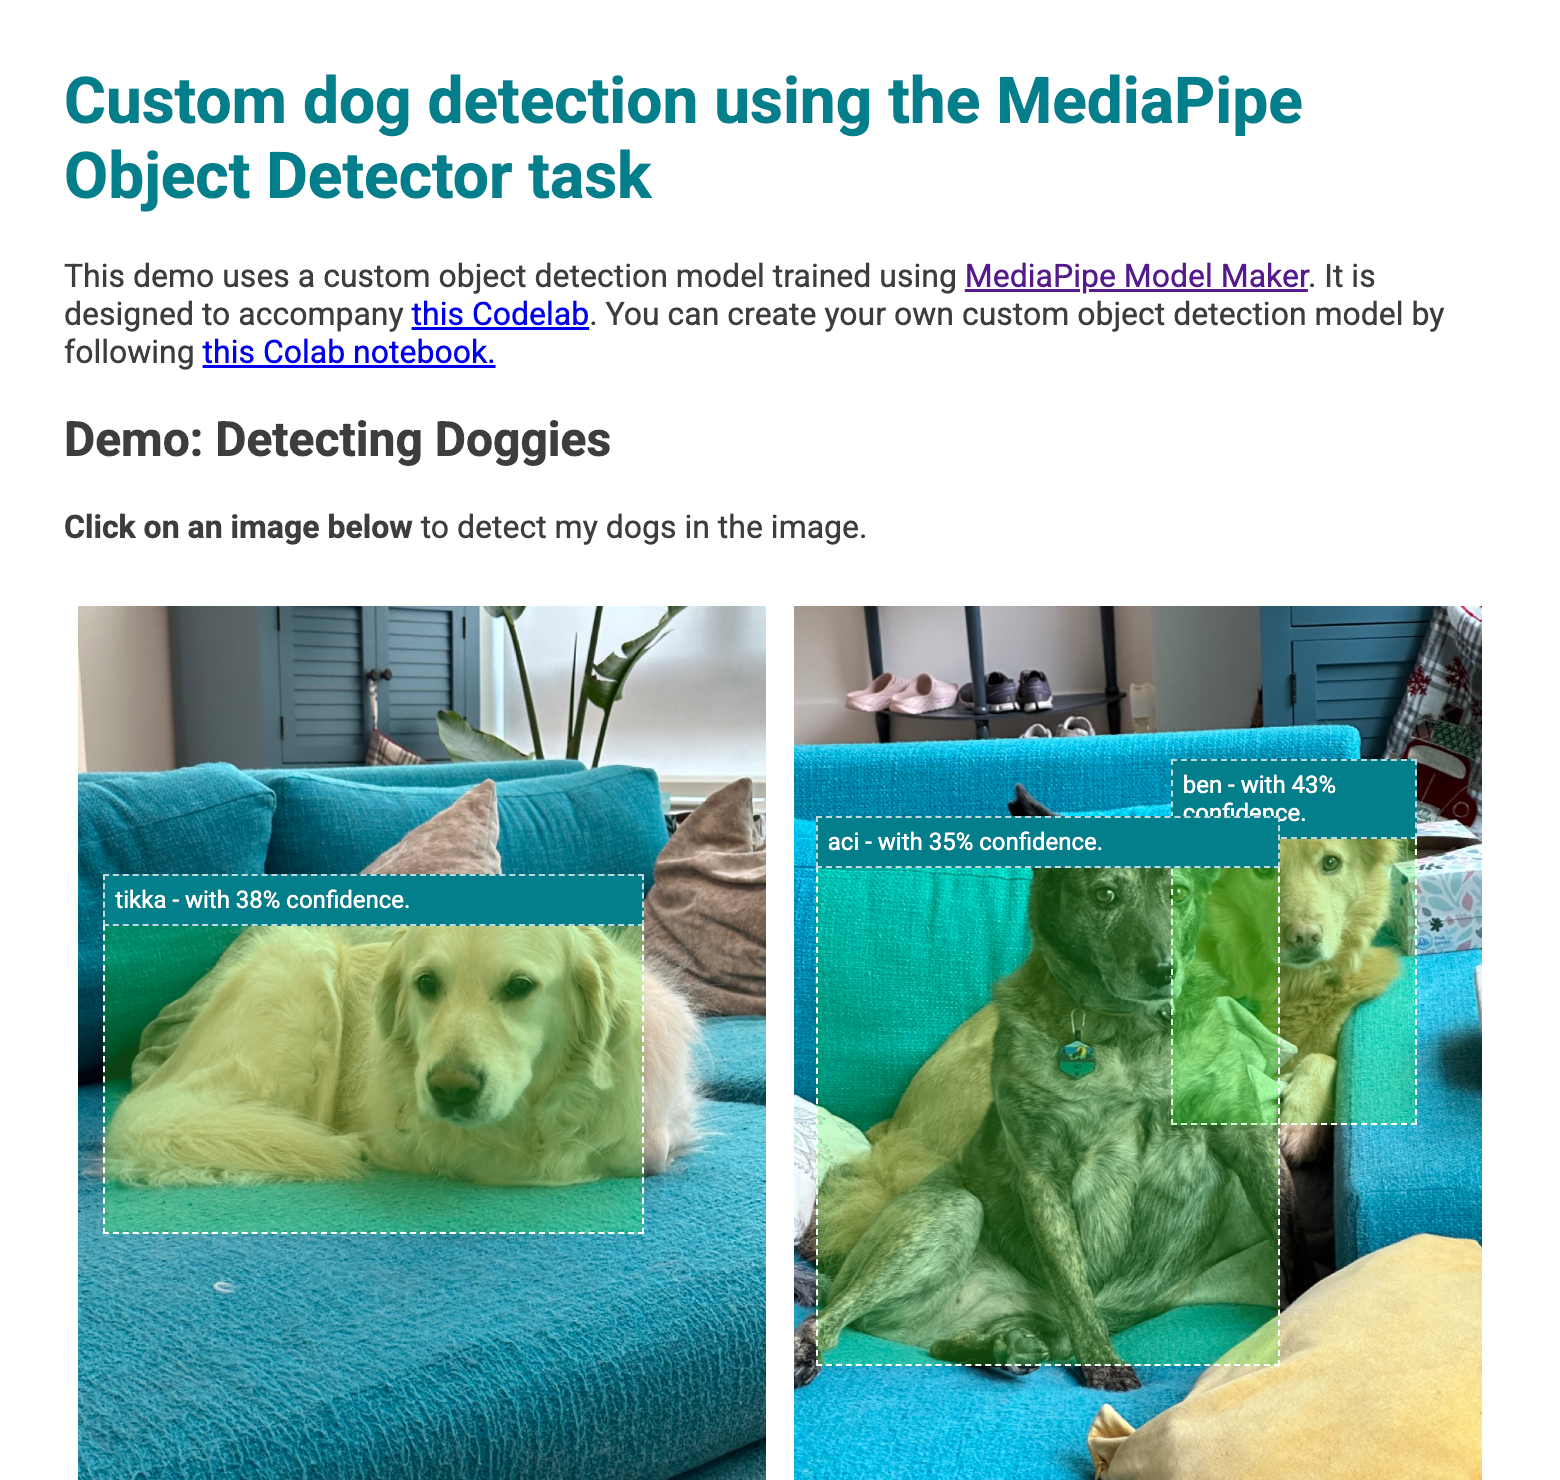 वेब ऐप्लिकेशन की झलक, जिसमें इमेज में मिले कुत्तों के ऊपर बाउंडिंग बॉक्स हैं